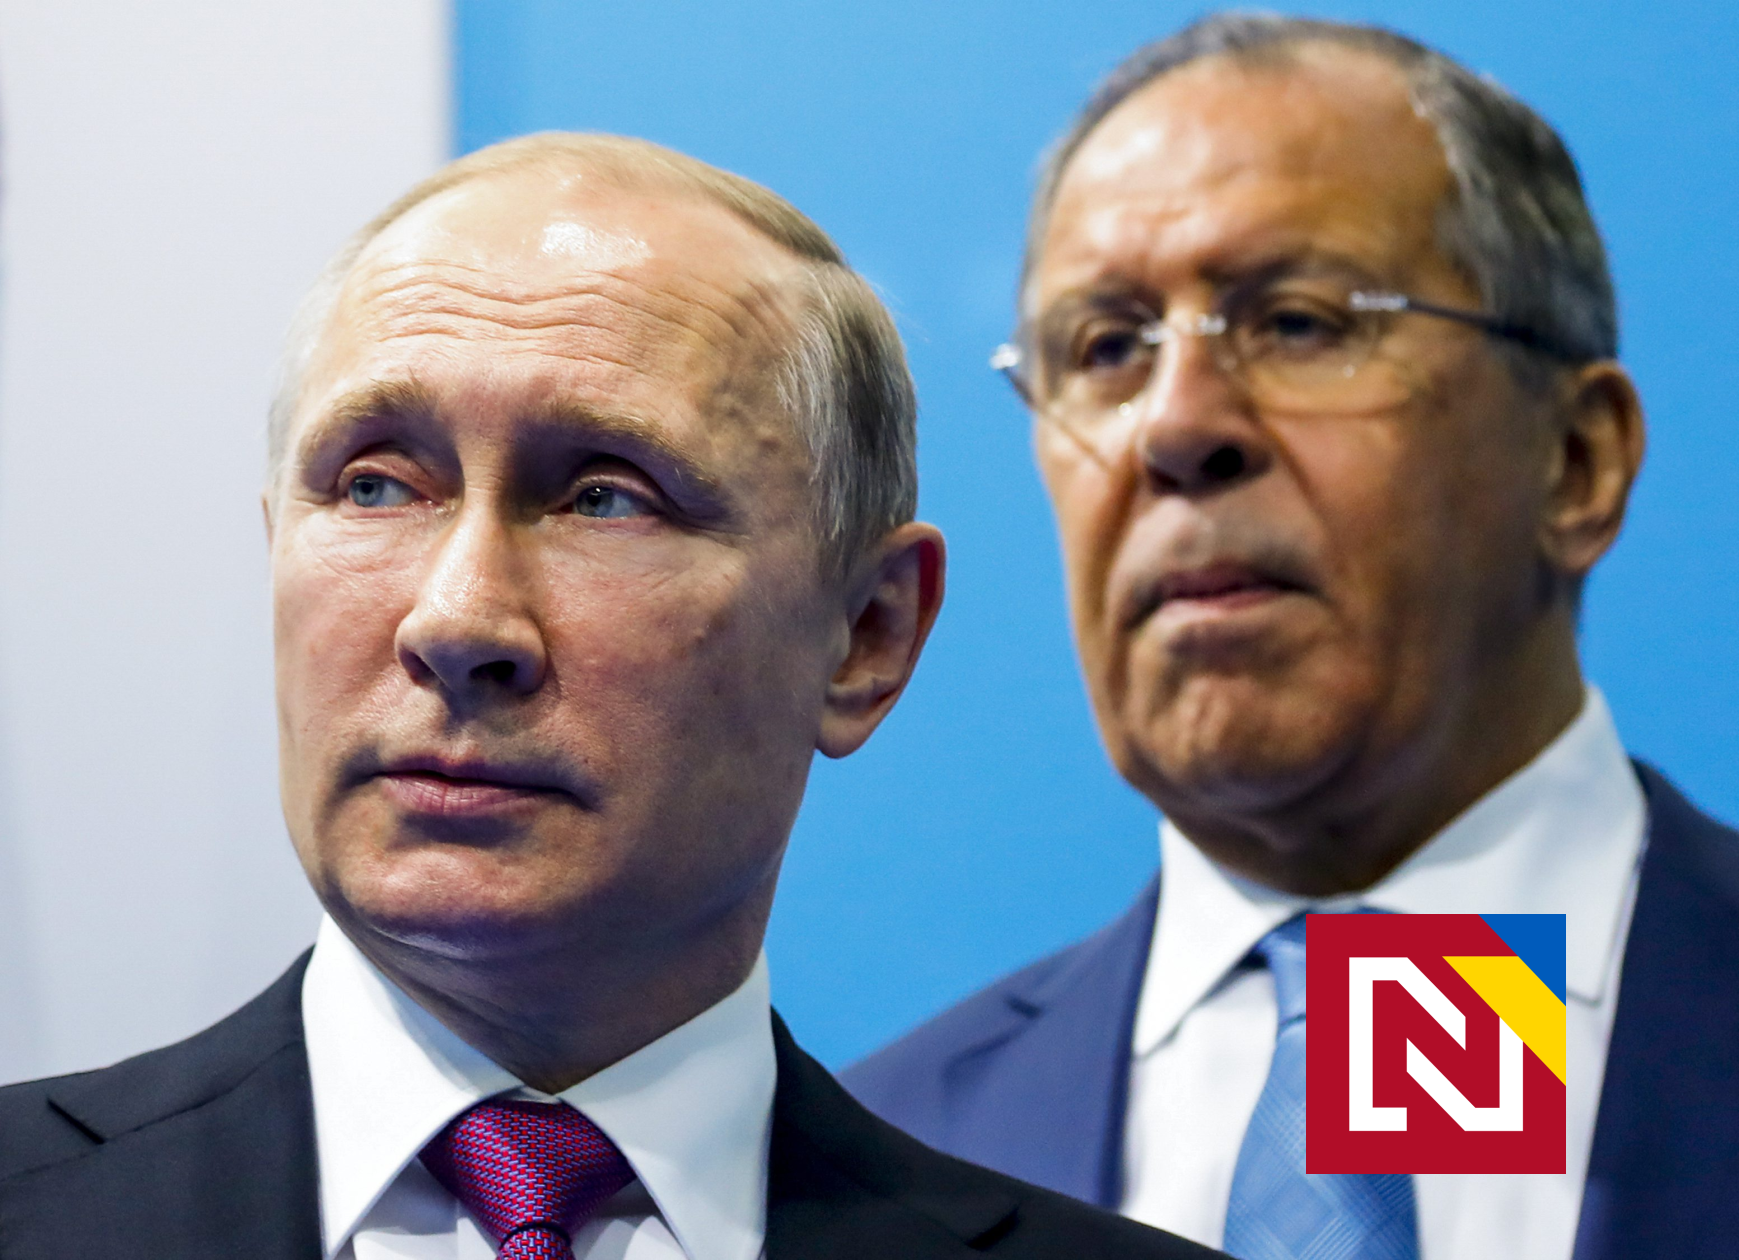 La Russie ne prendra plus d’euros ou de dollars comme gaz pour l’Europe, mais des roubles, a déclaré Poutine